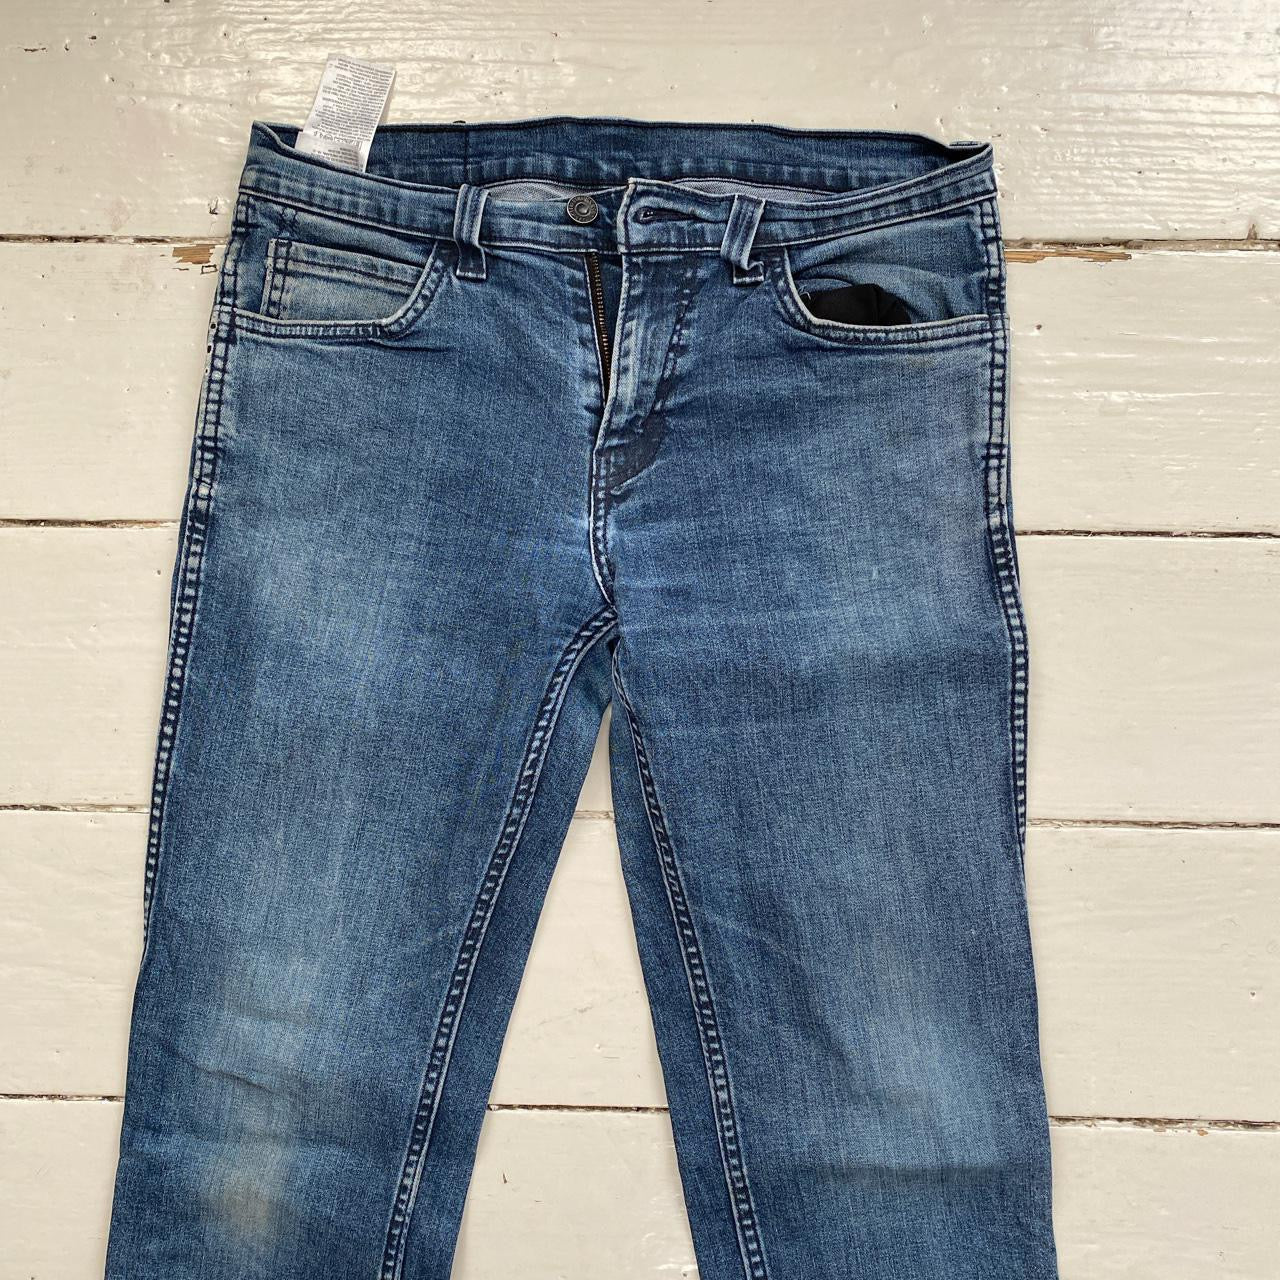 Levis 511 Slim Fit Jeans (30/30)